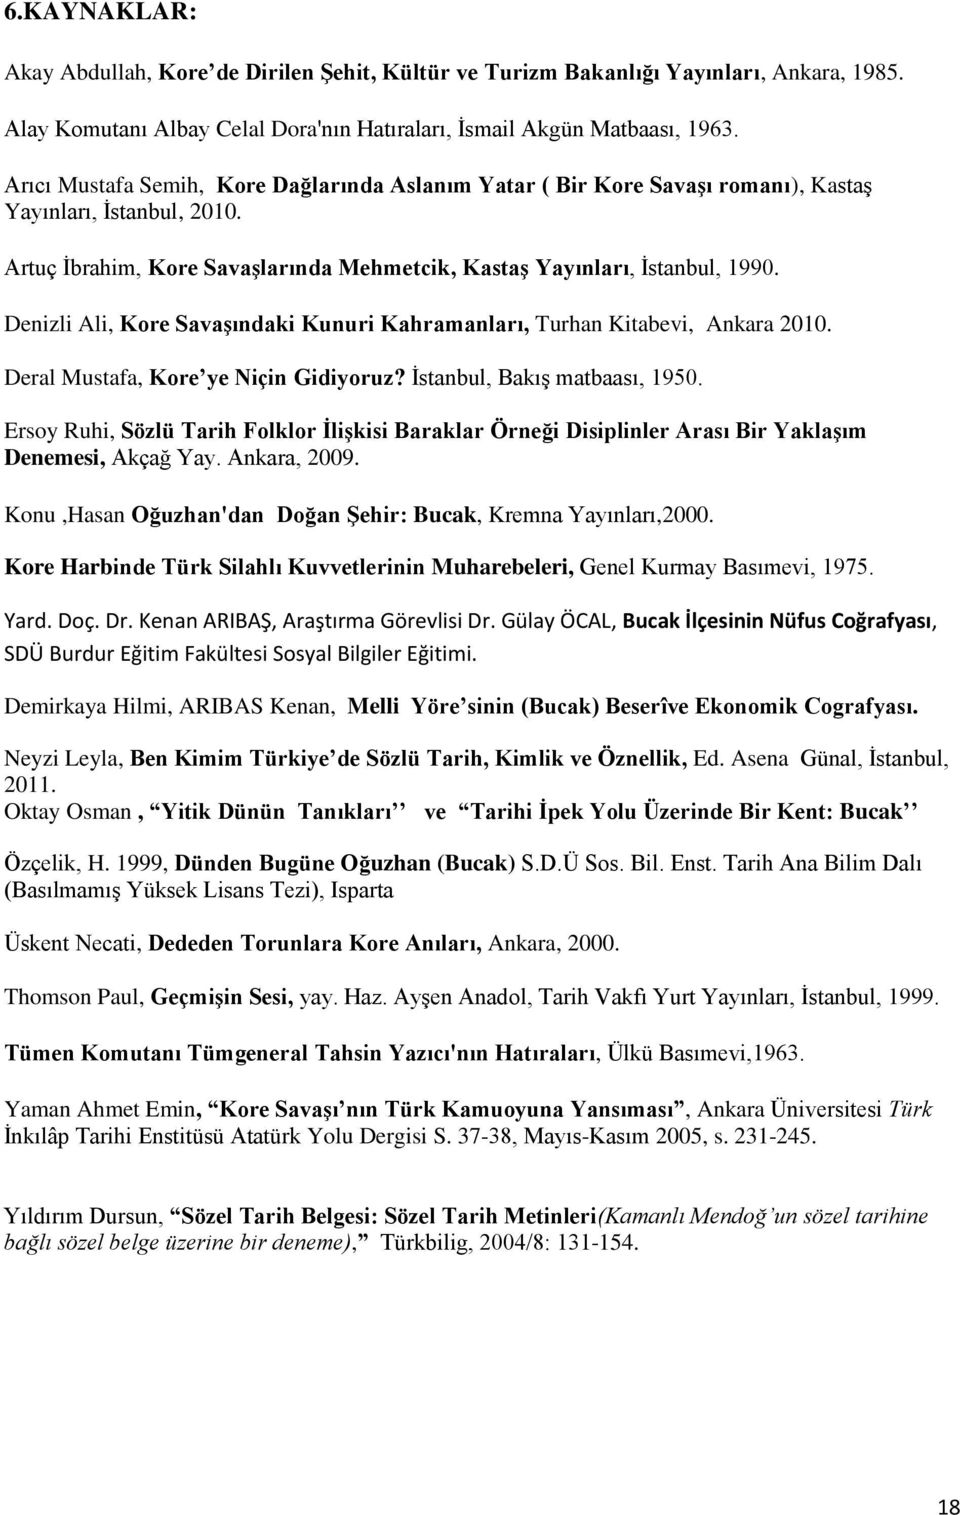 Denizli Ali, Kore Savaşındaki Kunuri Kahramanları, Turhan Kitabevi, Ankara 2010. Deral Mustafa, Kore ye Niçin Gidiyoruz? İstanbul, Bakış matbaası, 1950.